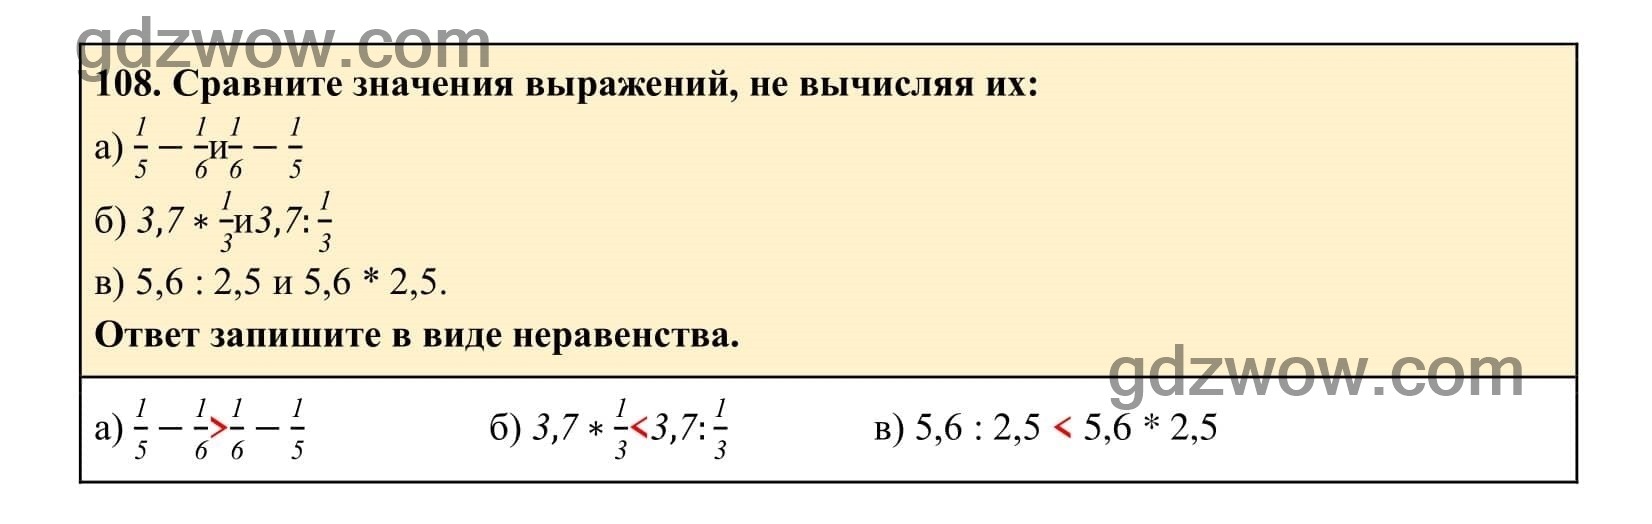 Упражнение 108 - ГДЗ по Алгебре 7 класс Учебник Макарычев (решебник) - GDZwow